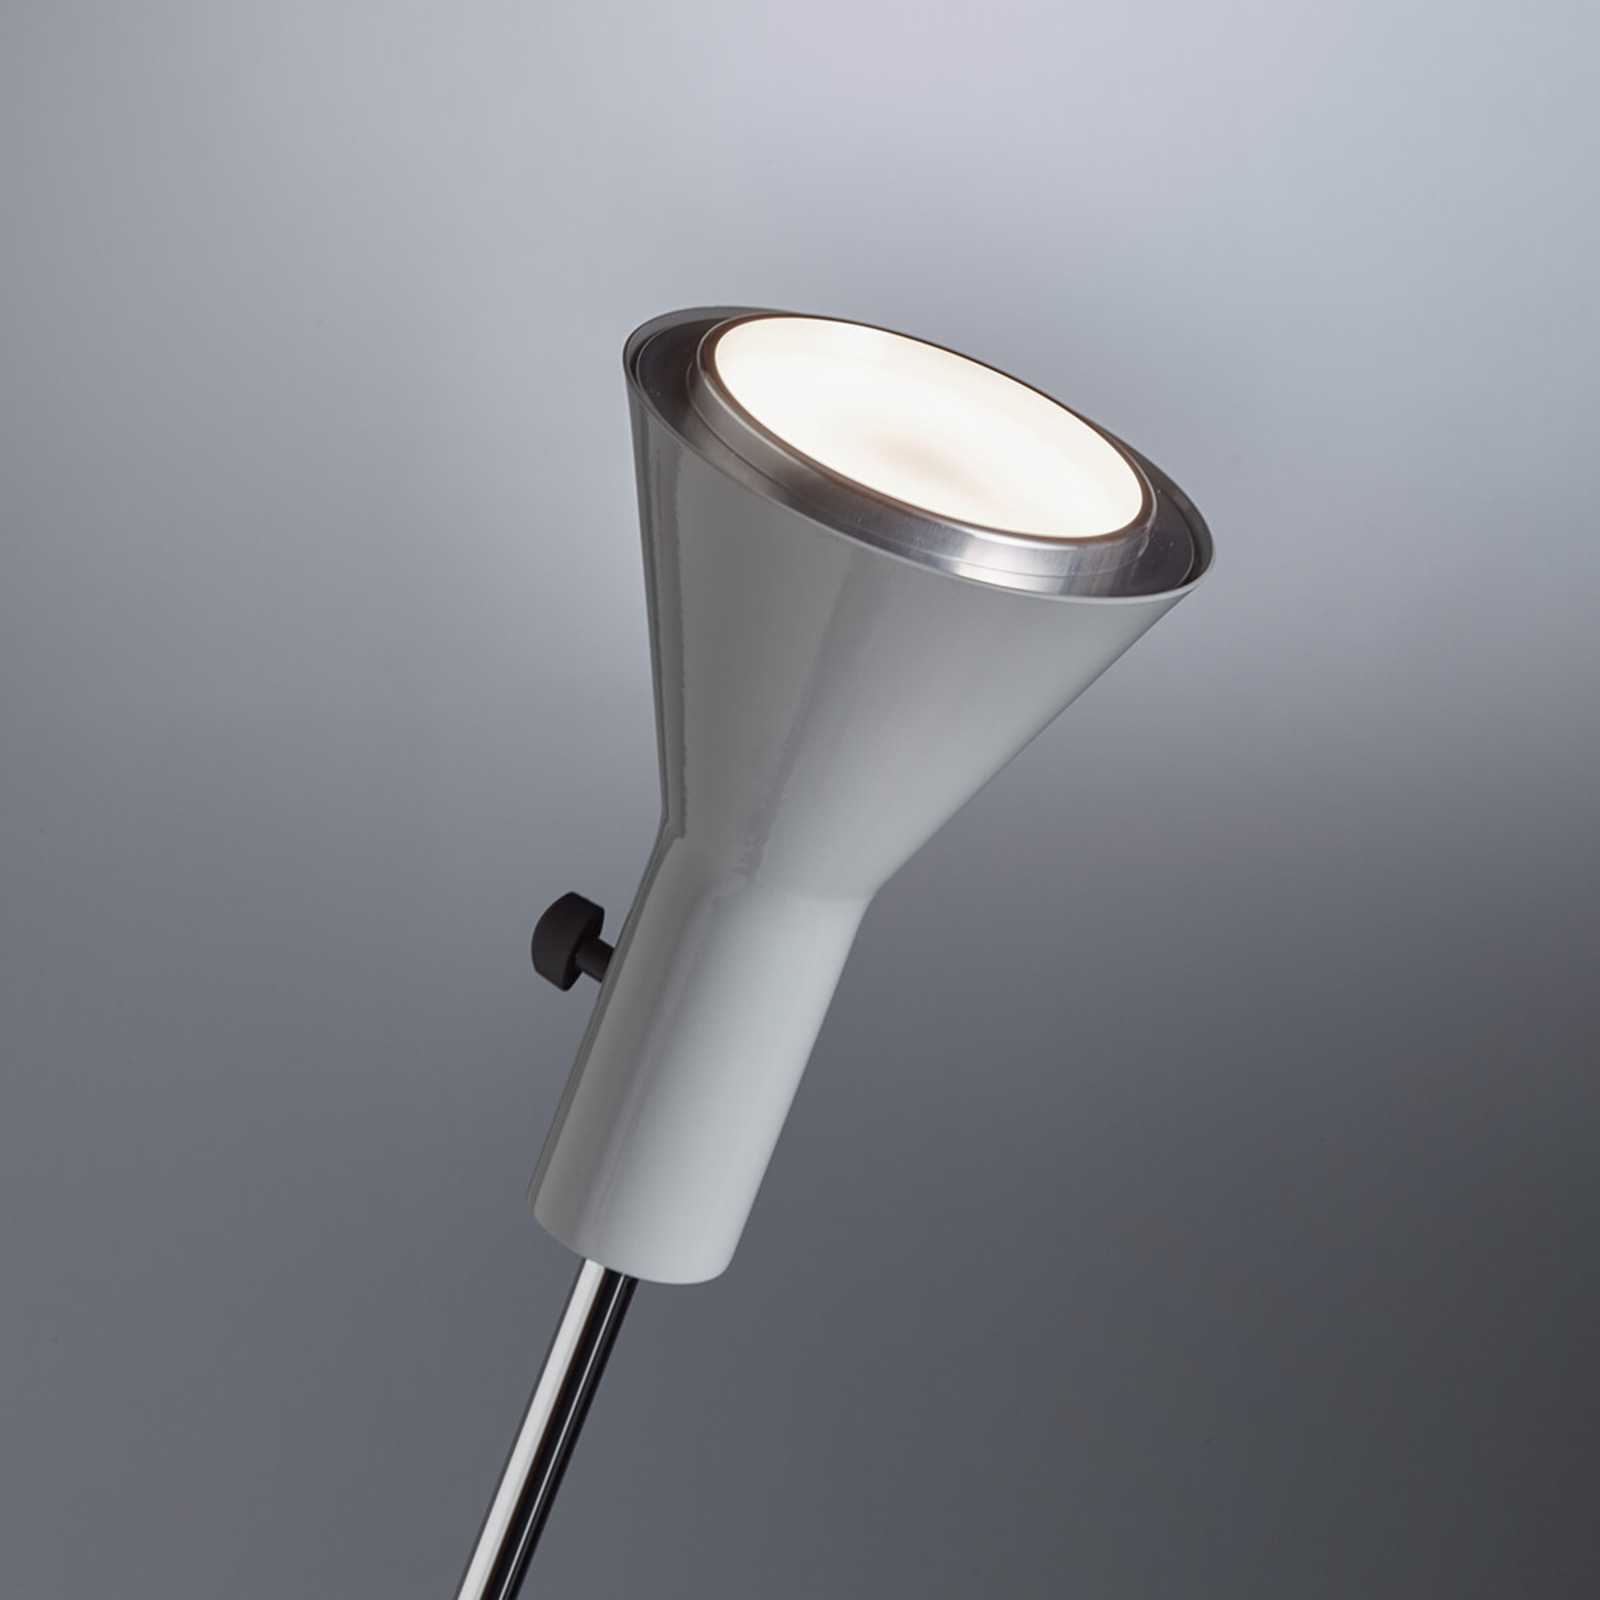 LED-golvlampan Gru med integrerad dimmer